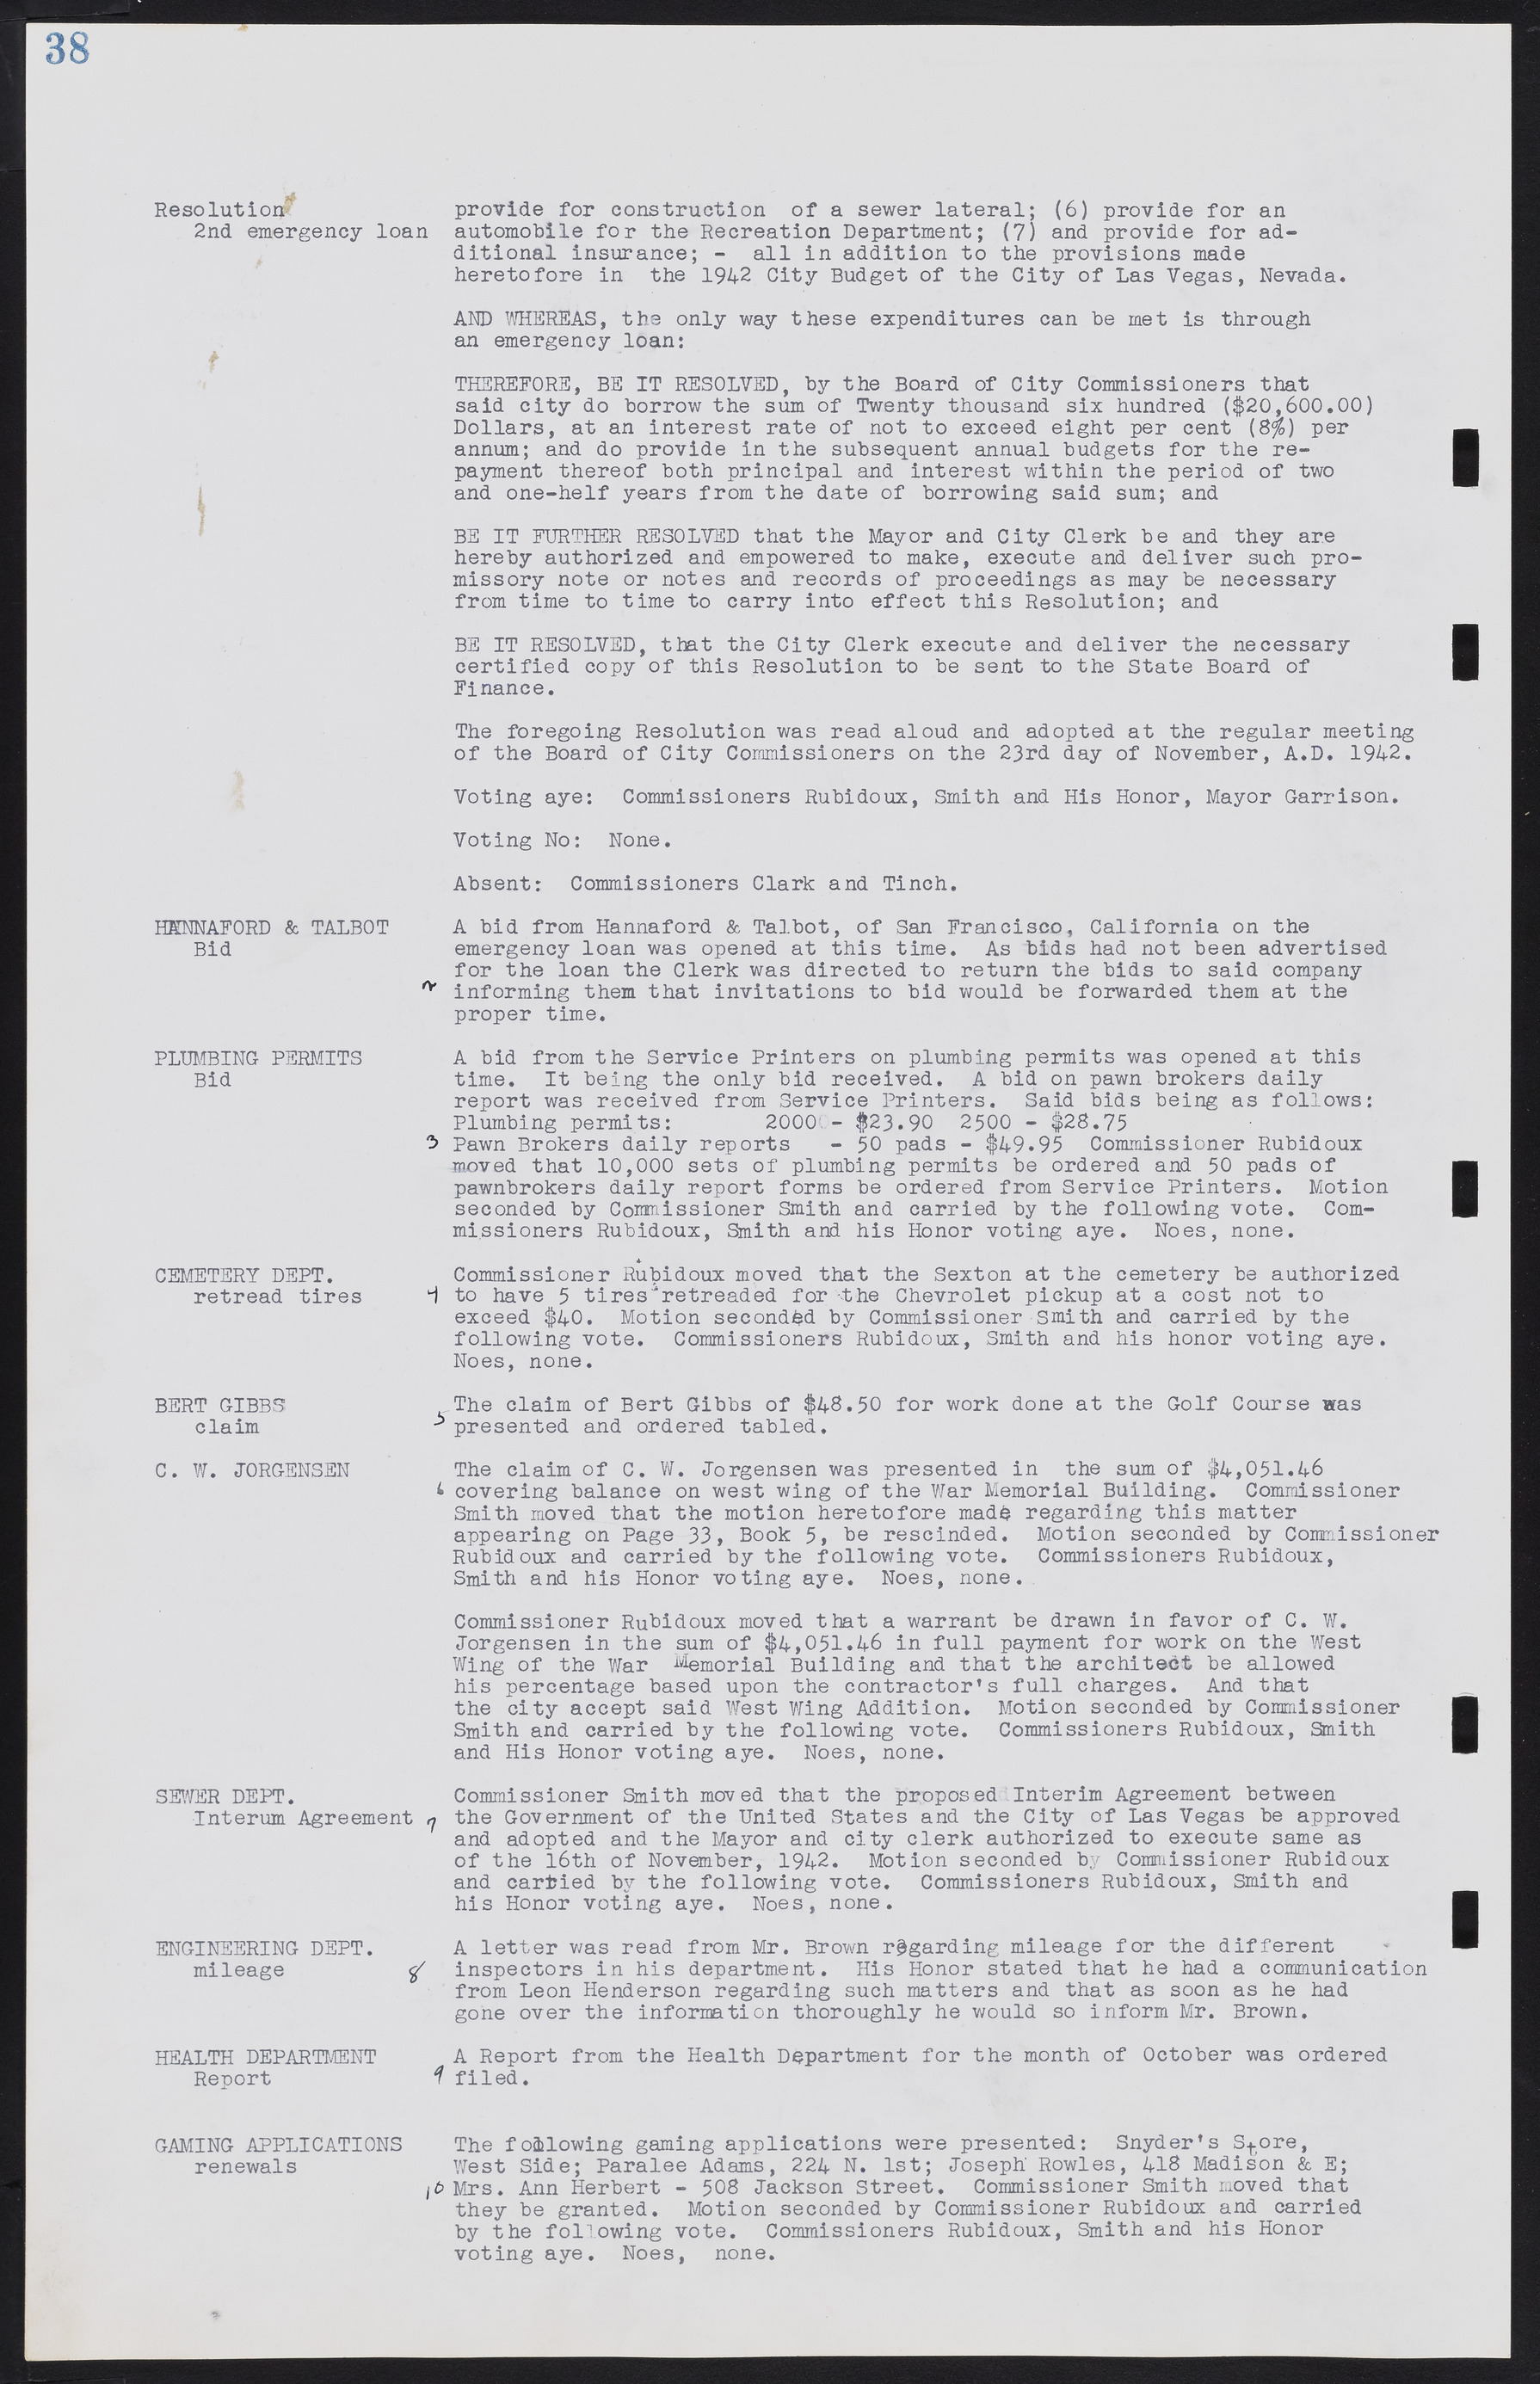 Las Vegas City Commission Minutes, August 11, 1942 to December 30, 1946, lvc000005-48